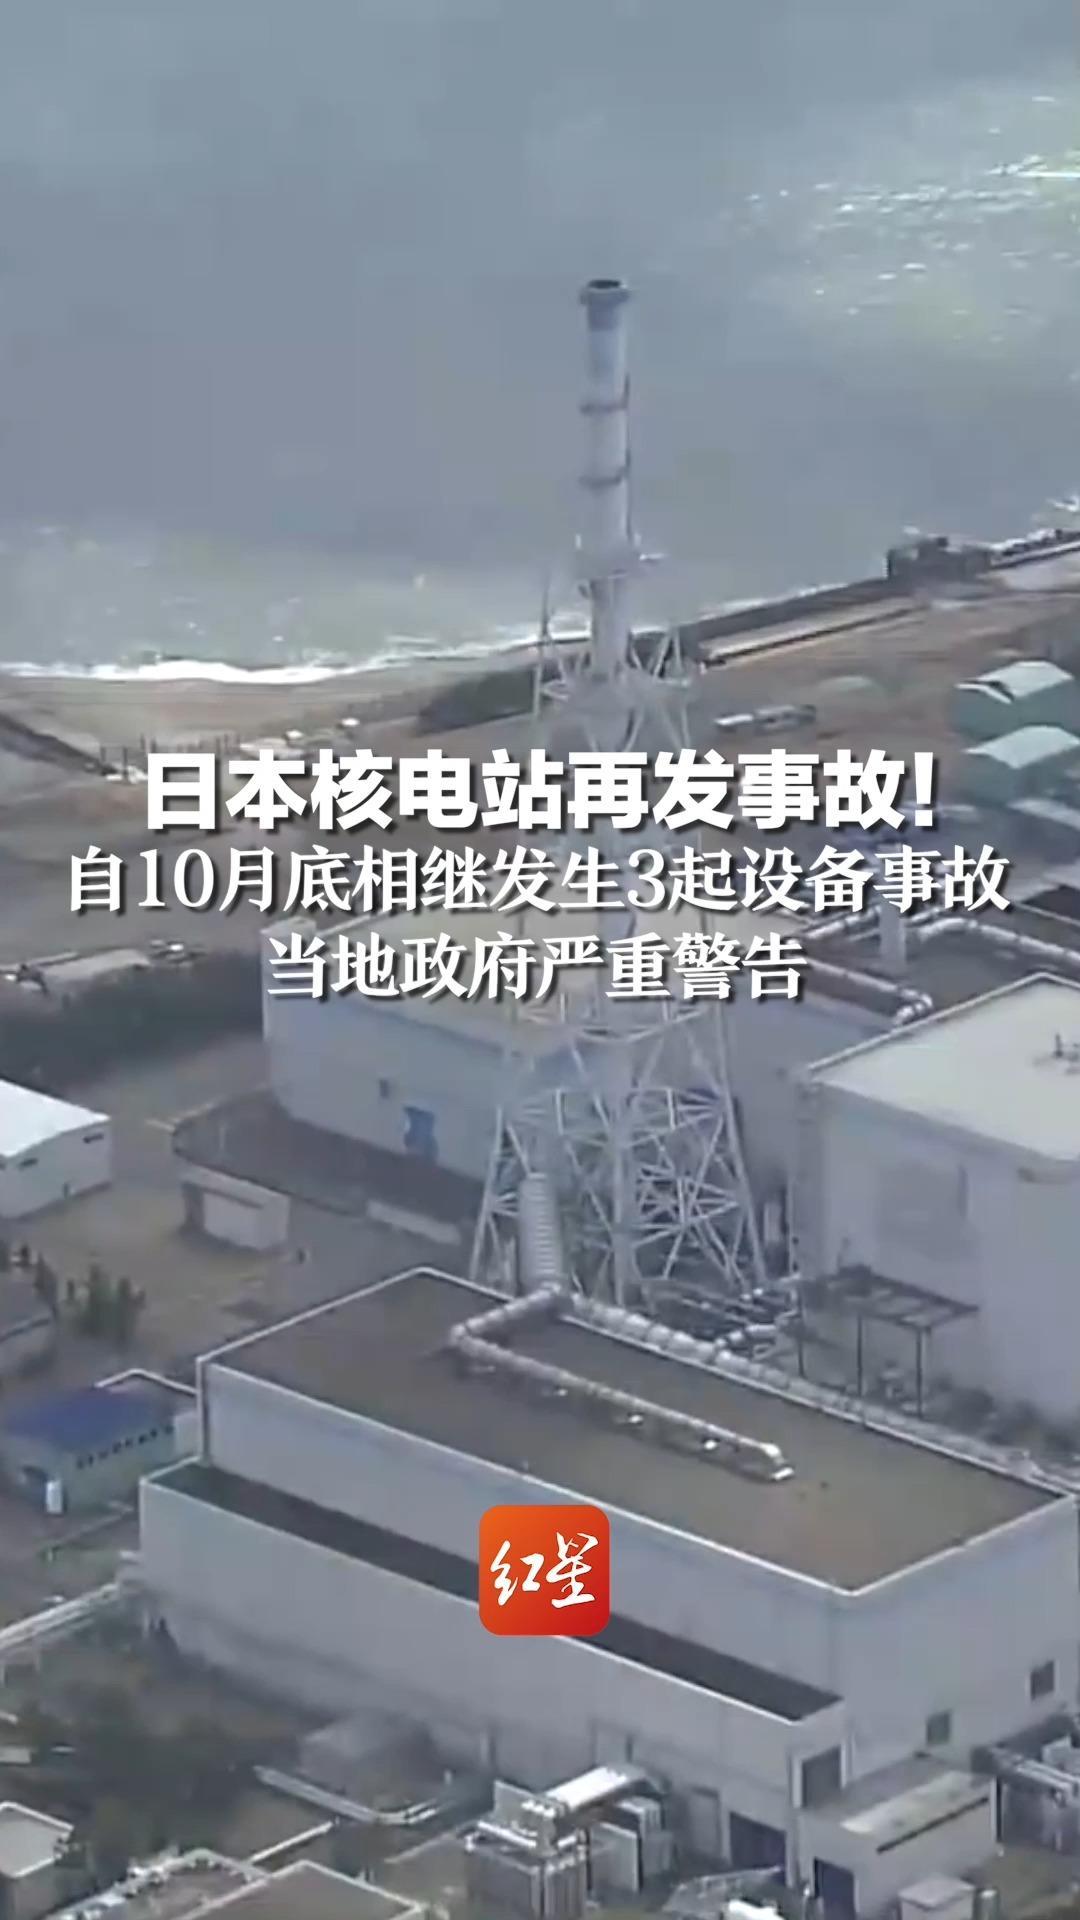 日本核电站再发事故!